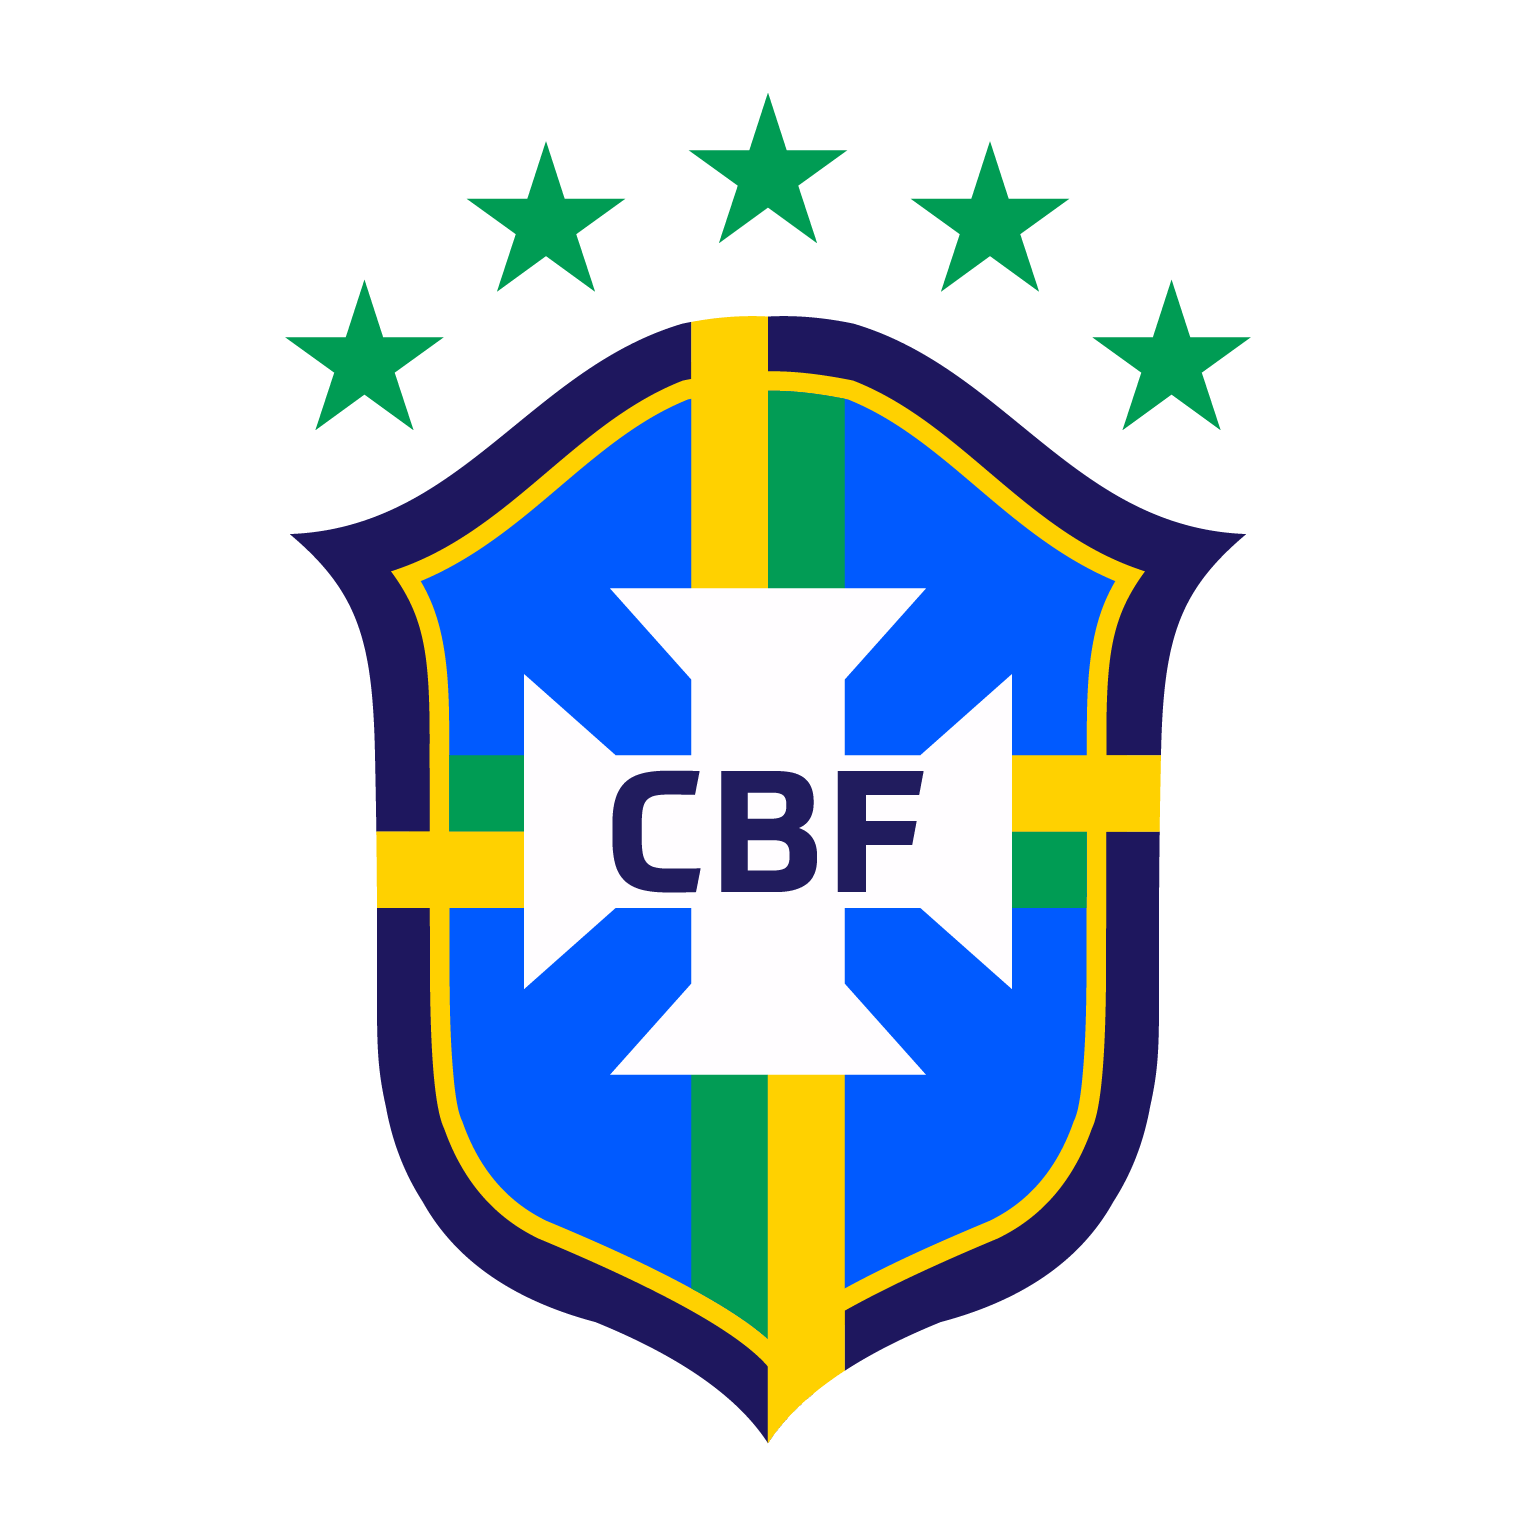 escudo selecao brasileira brasil novo logo 2019 com estrelas